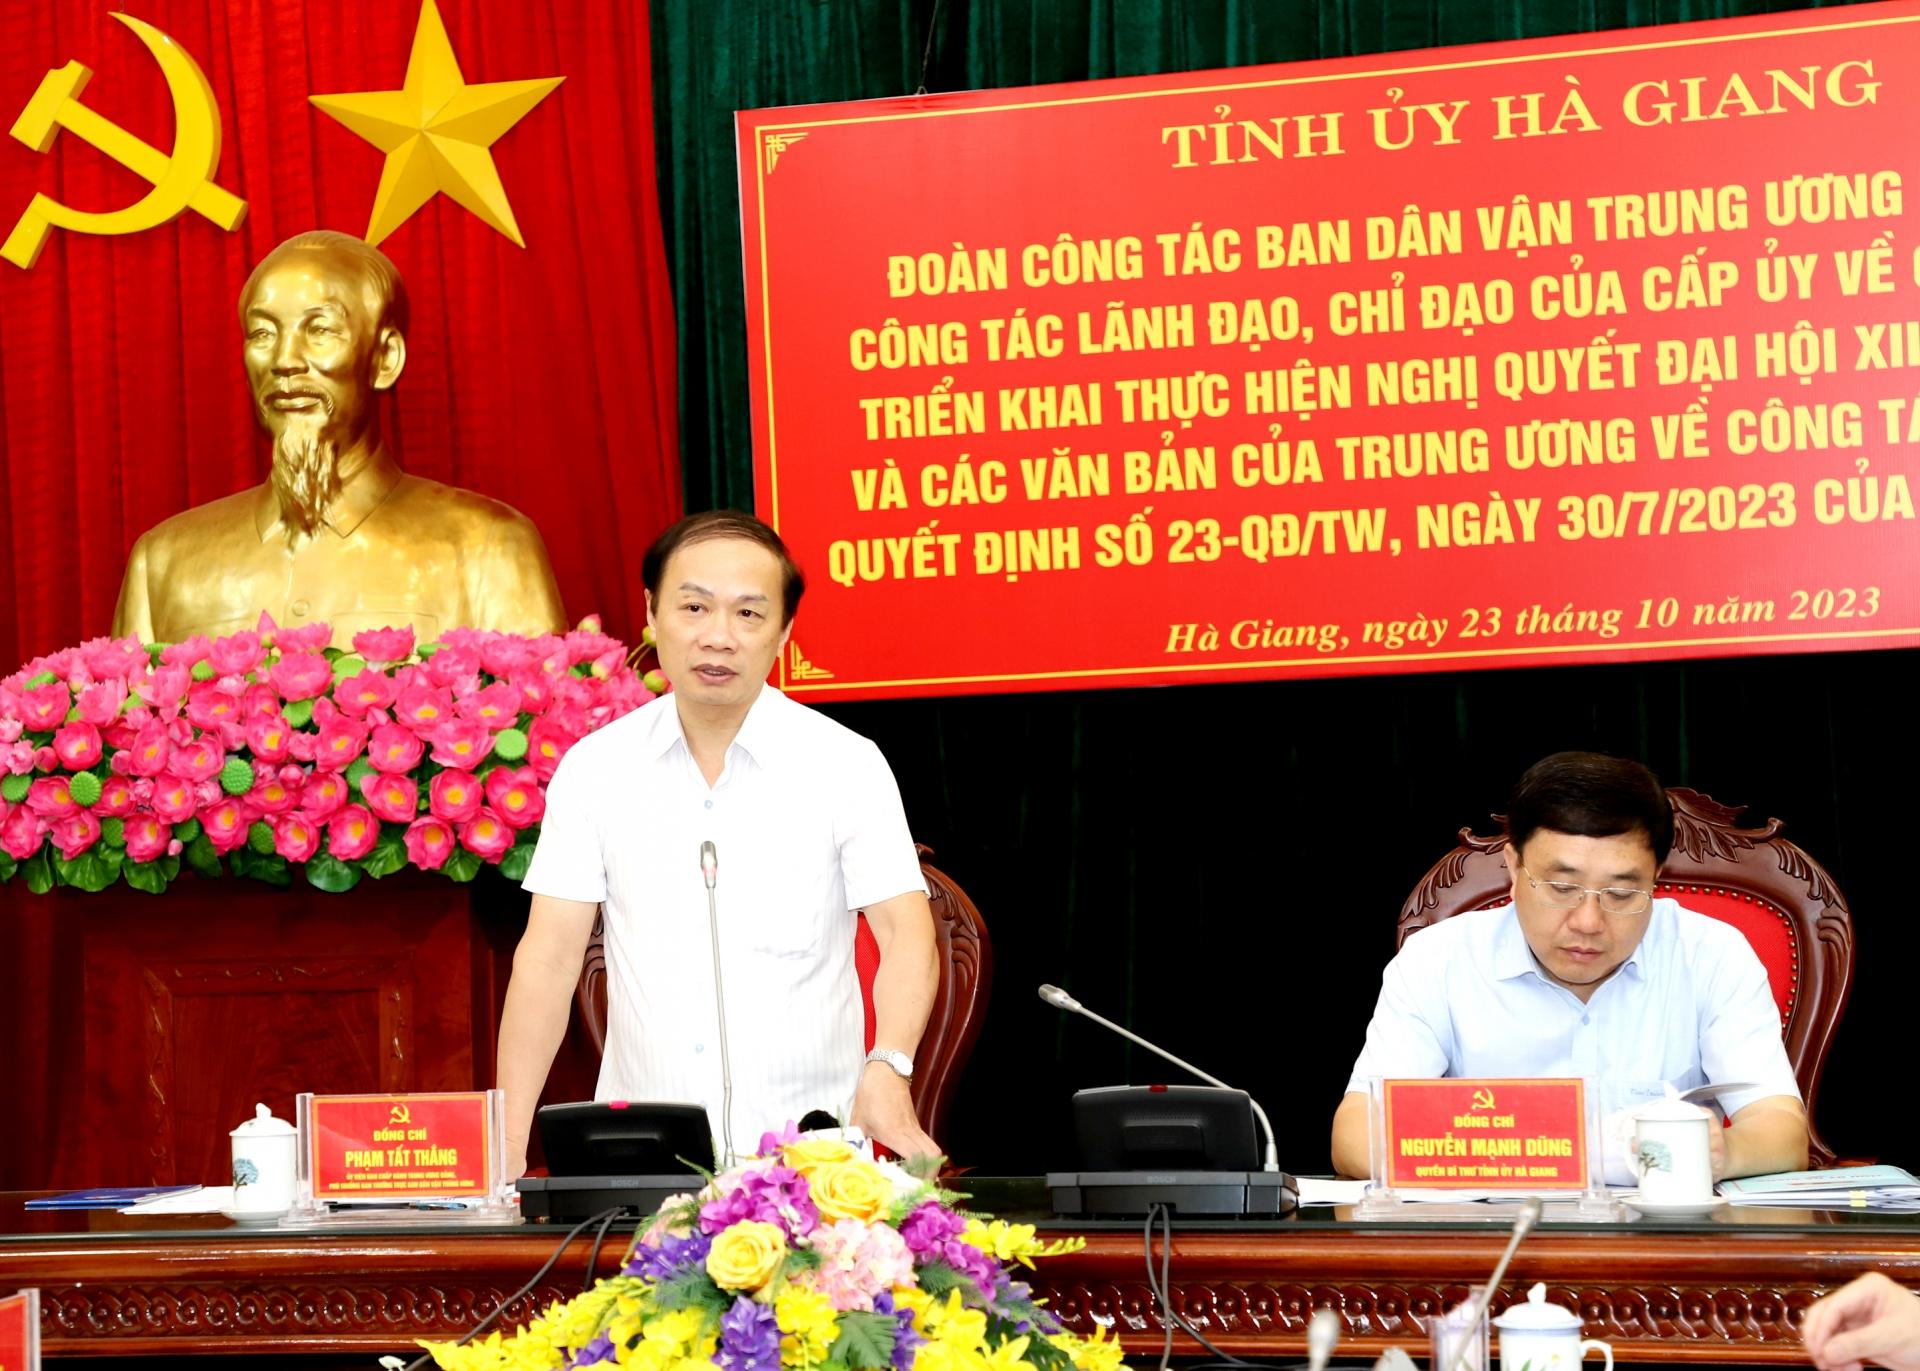 Phó Trưởng ban Thường trực Ban Dân vận Trung ương Phạm Tất Thắng phát biểu kết luận buổi làm việc